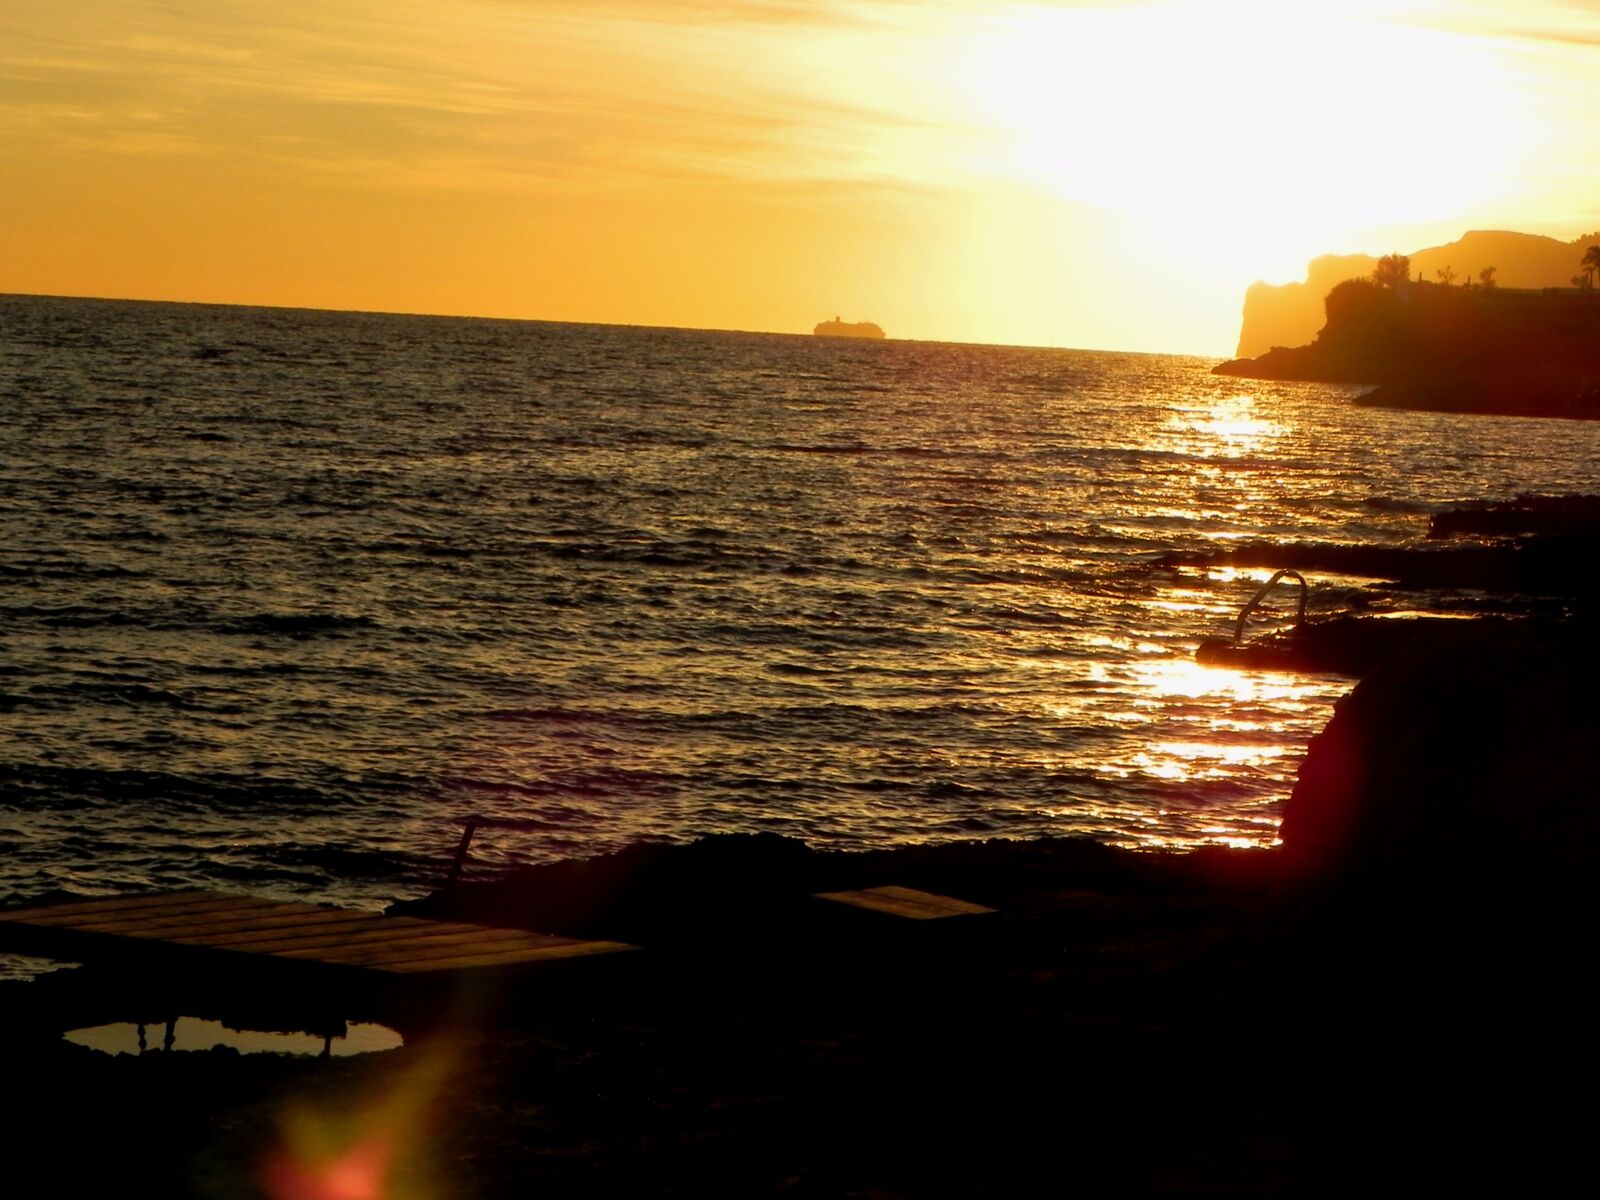 Nikon Coolpix P100 sample photo. Sunset, nature, sea photography